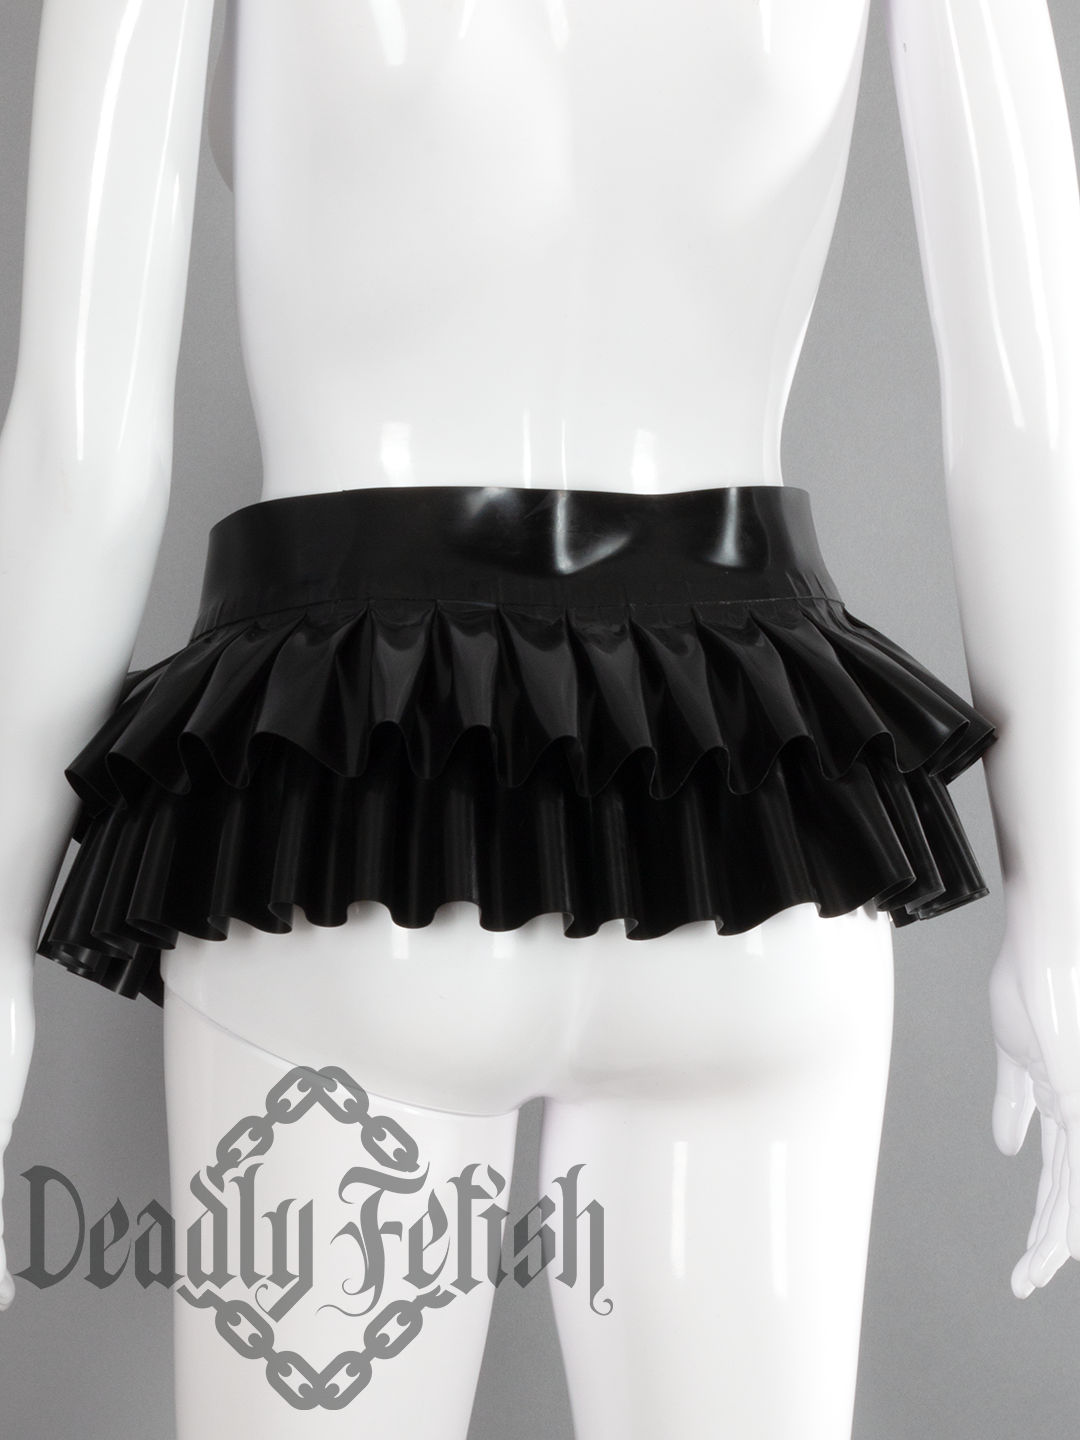 Deadly Fetish Latex: Skirt #08